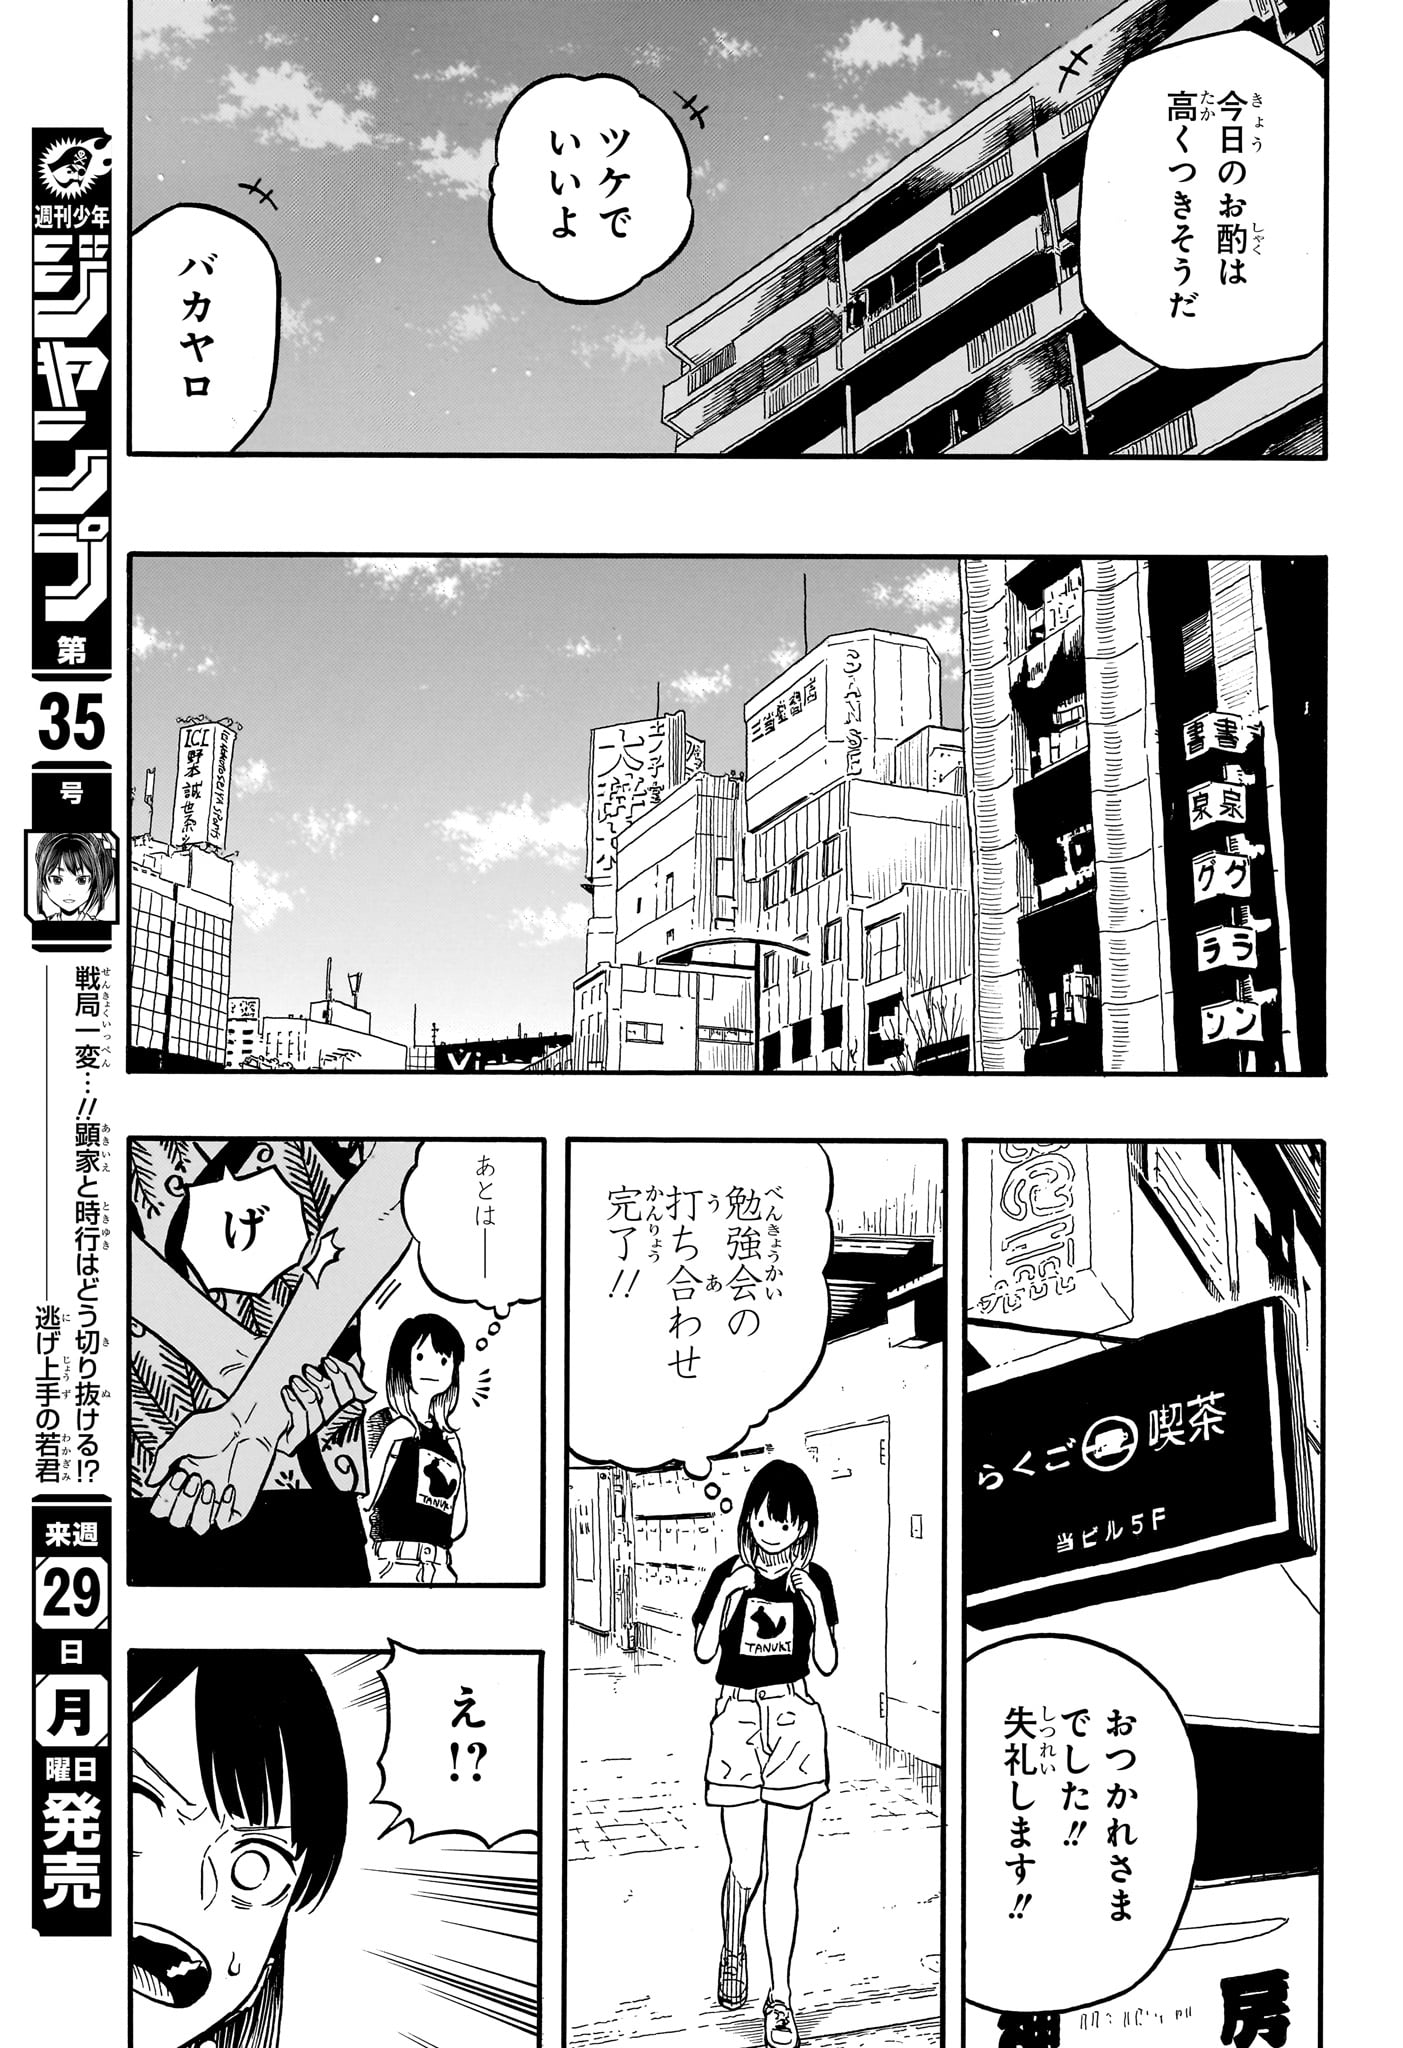 Akane-Banashi - Chapter 119 - Page 13